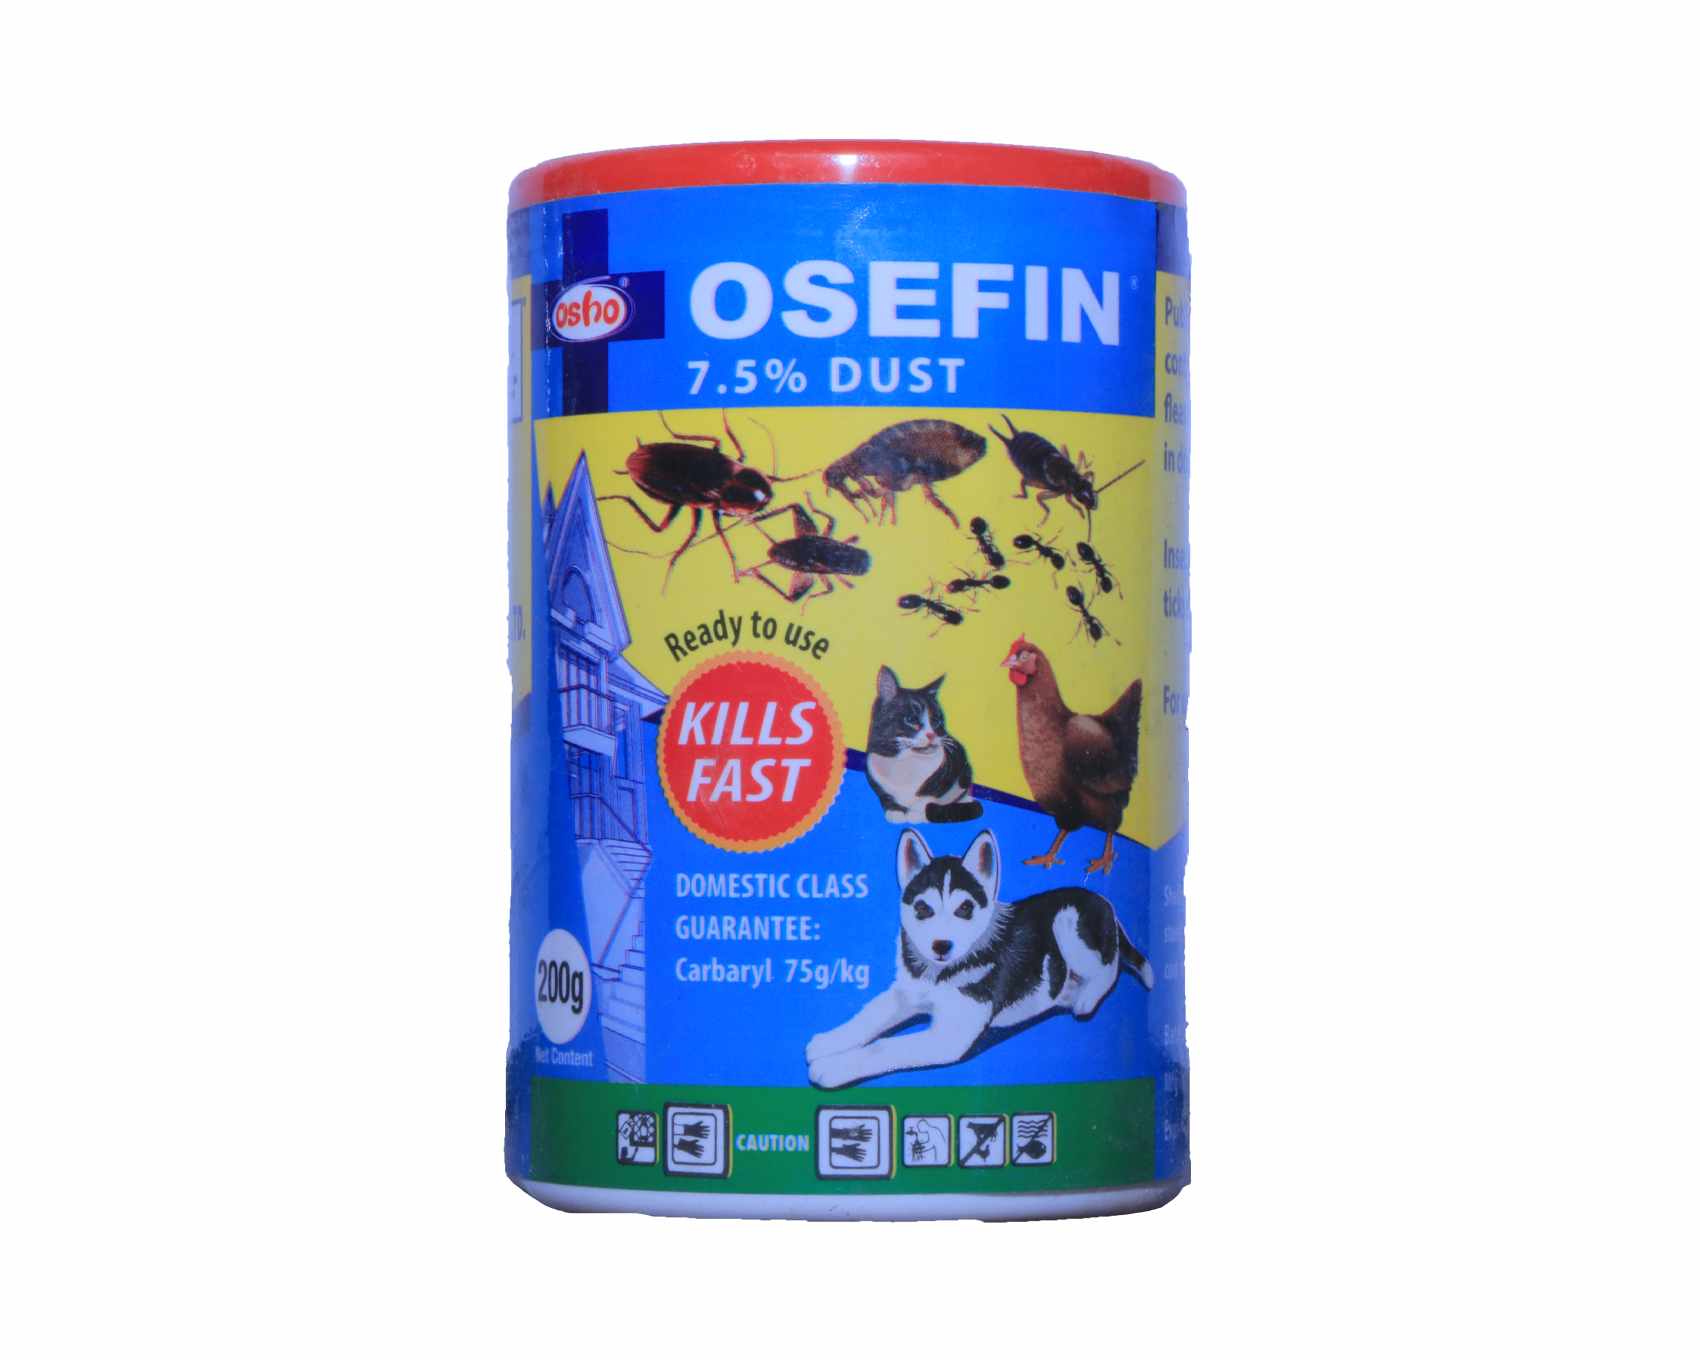 Osefin 7.5% Dust